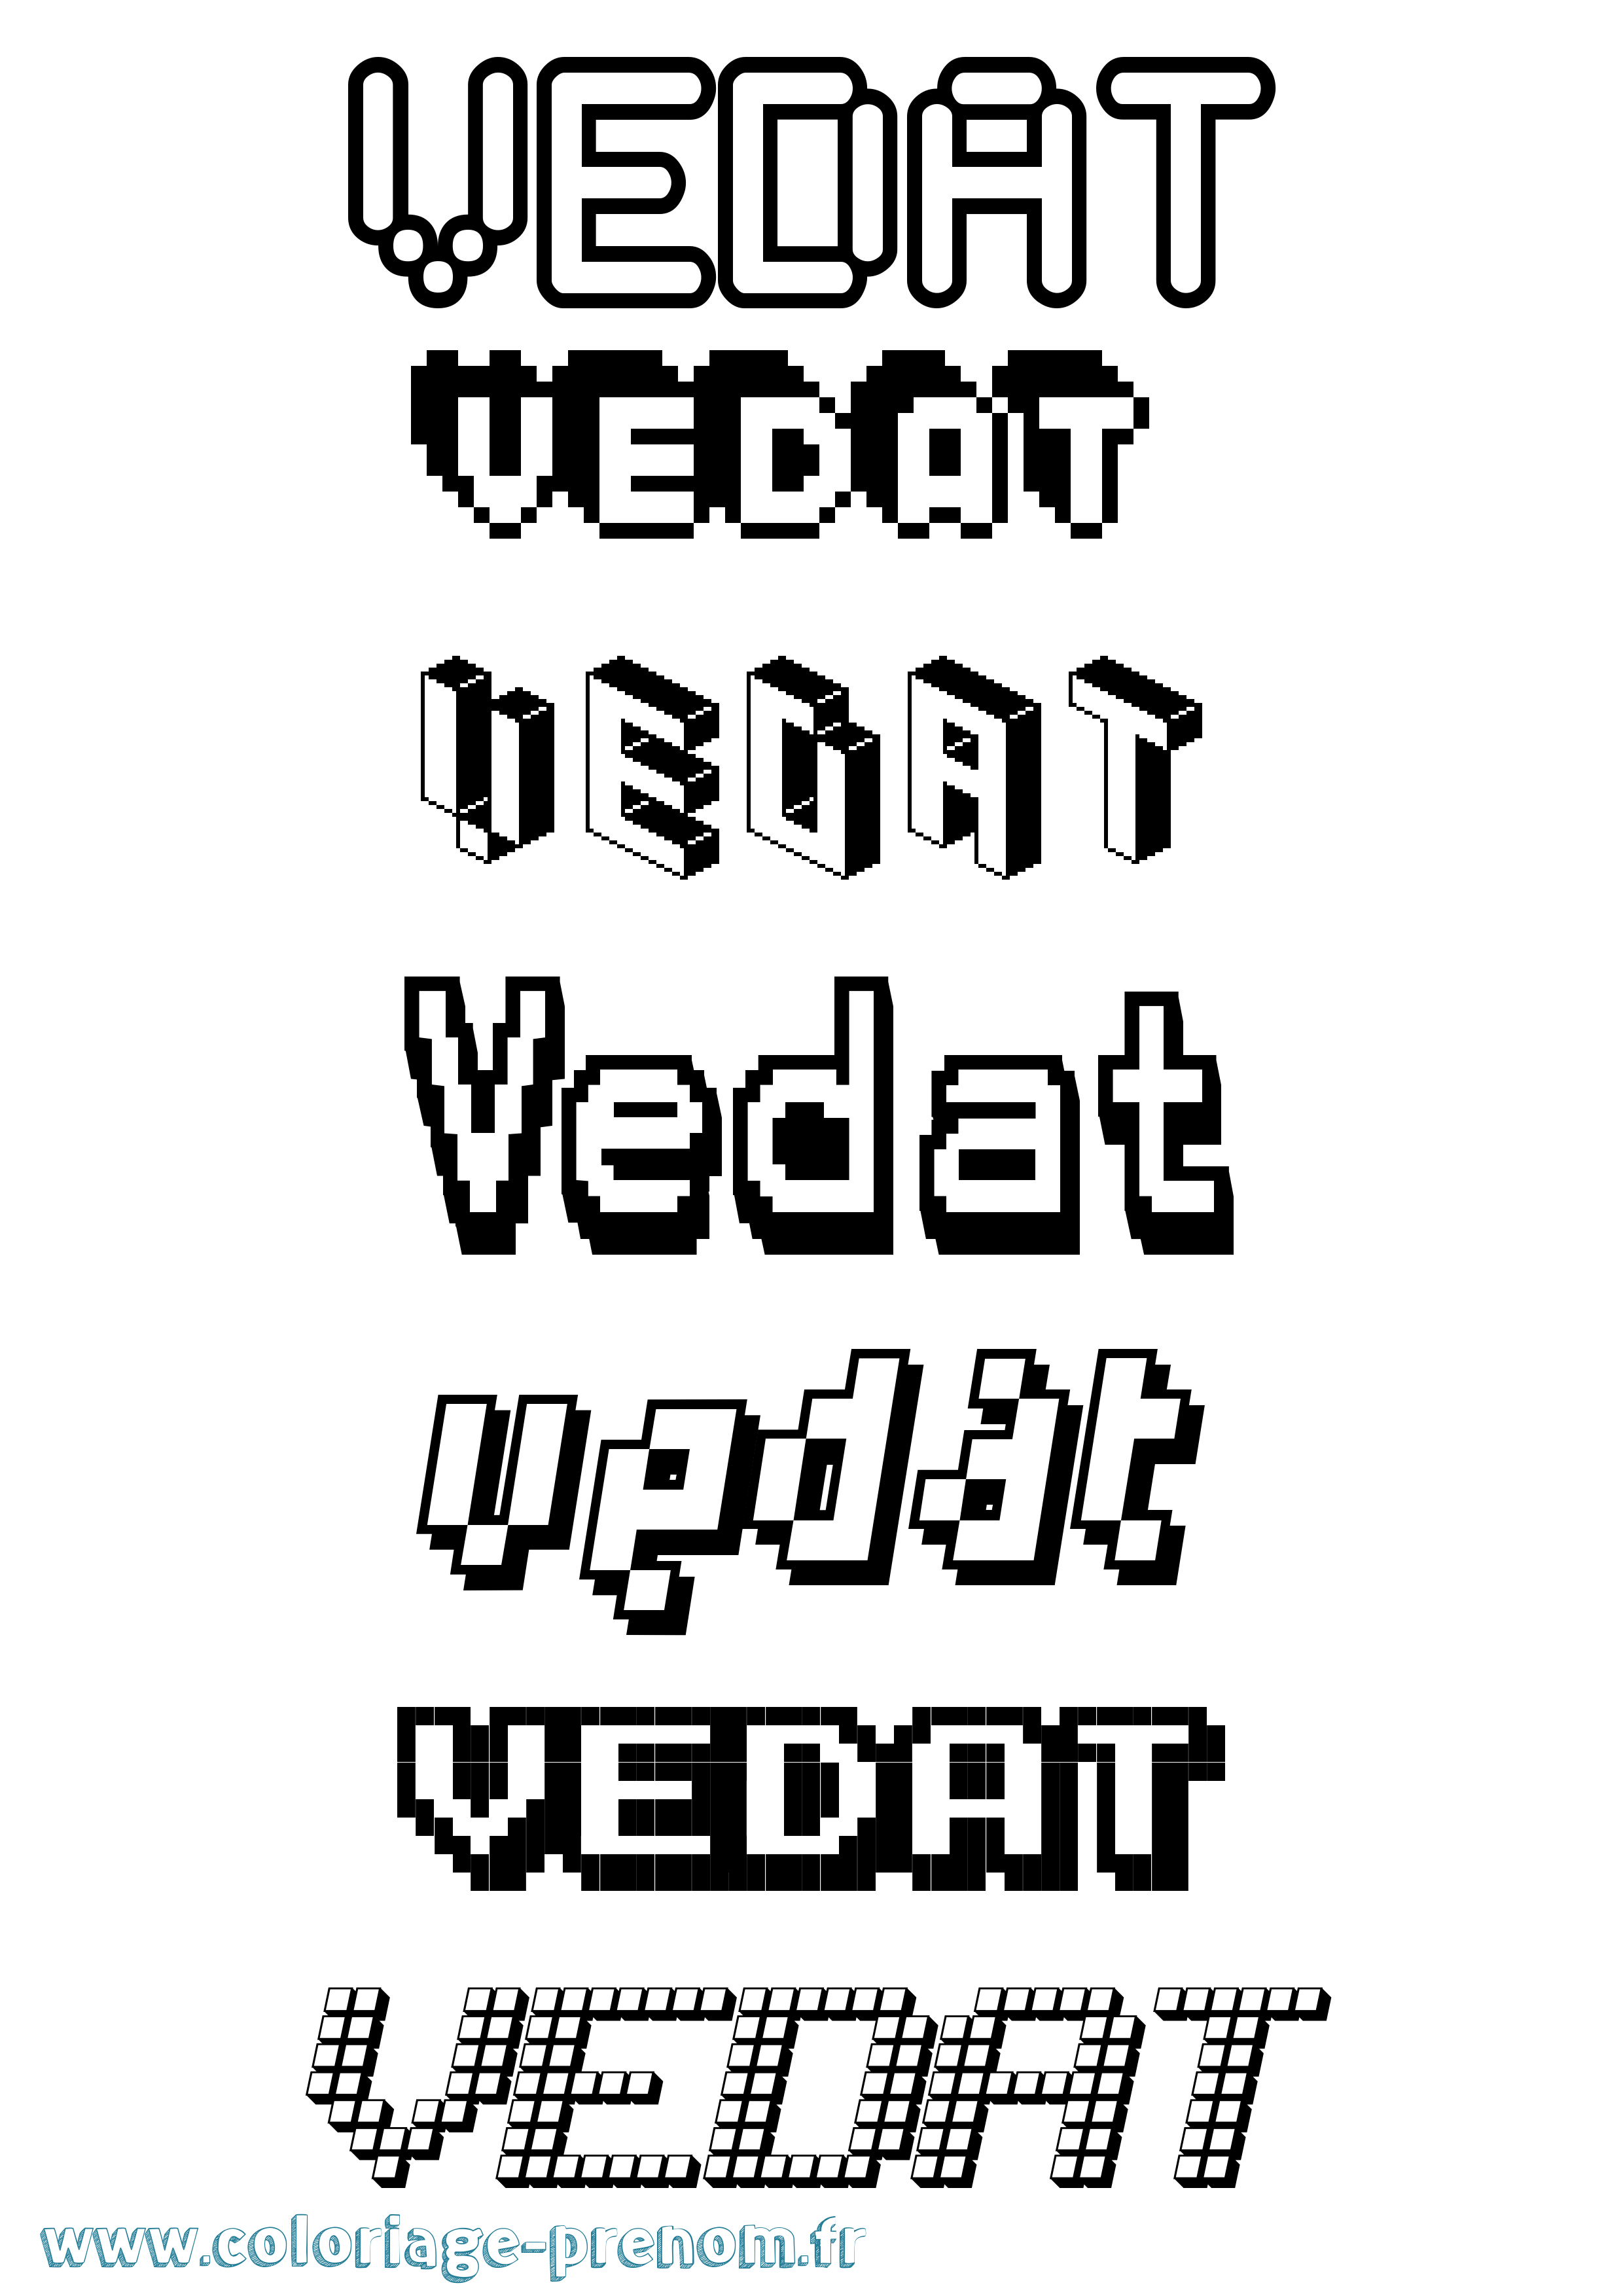 Coloriage prénom Vedat Pixel